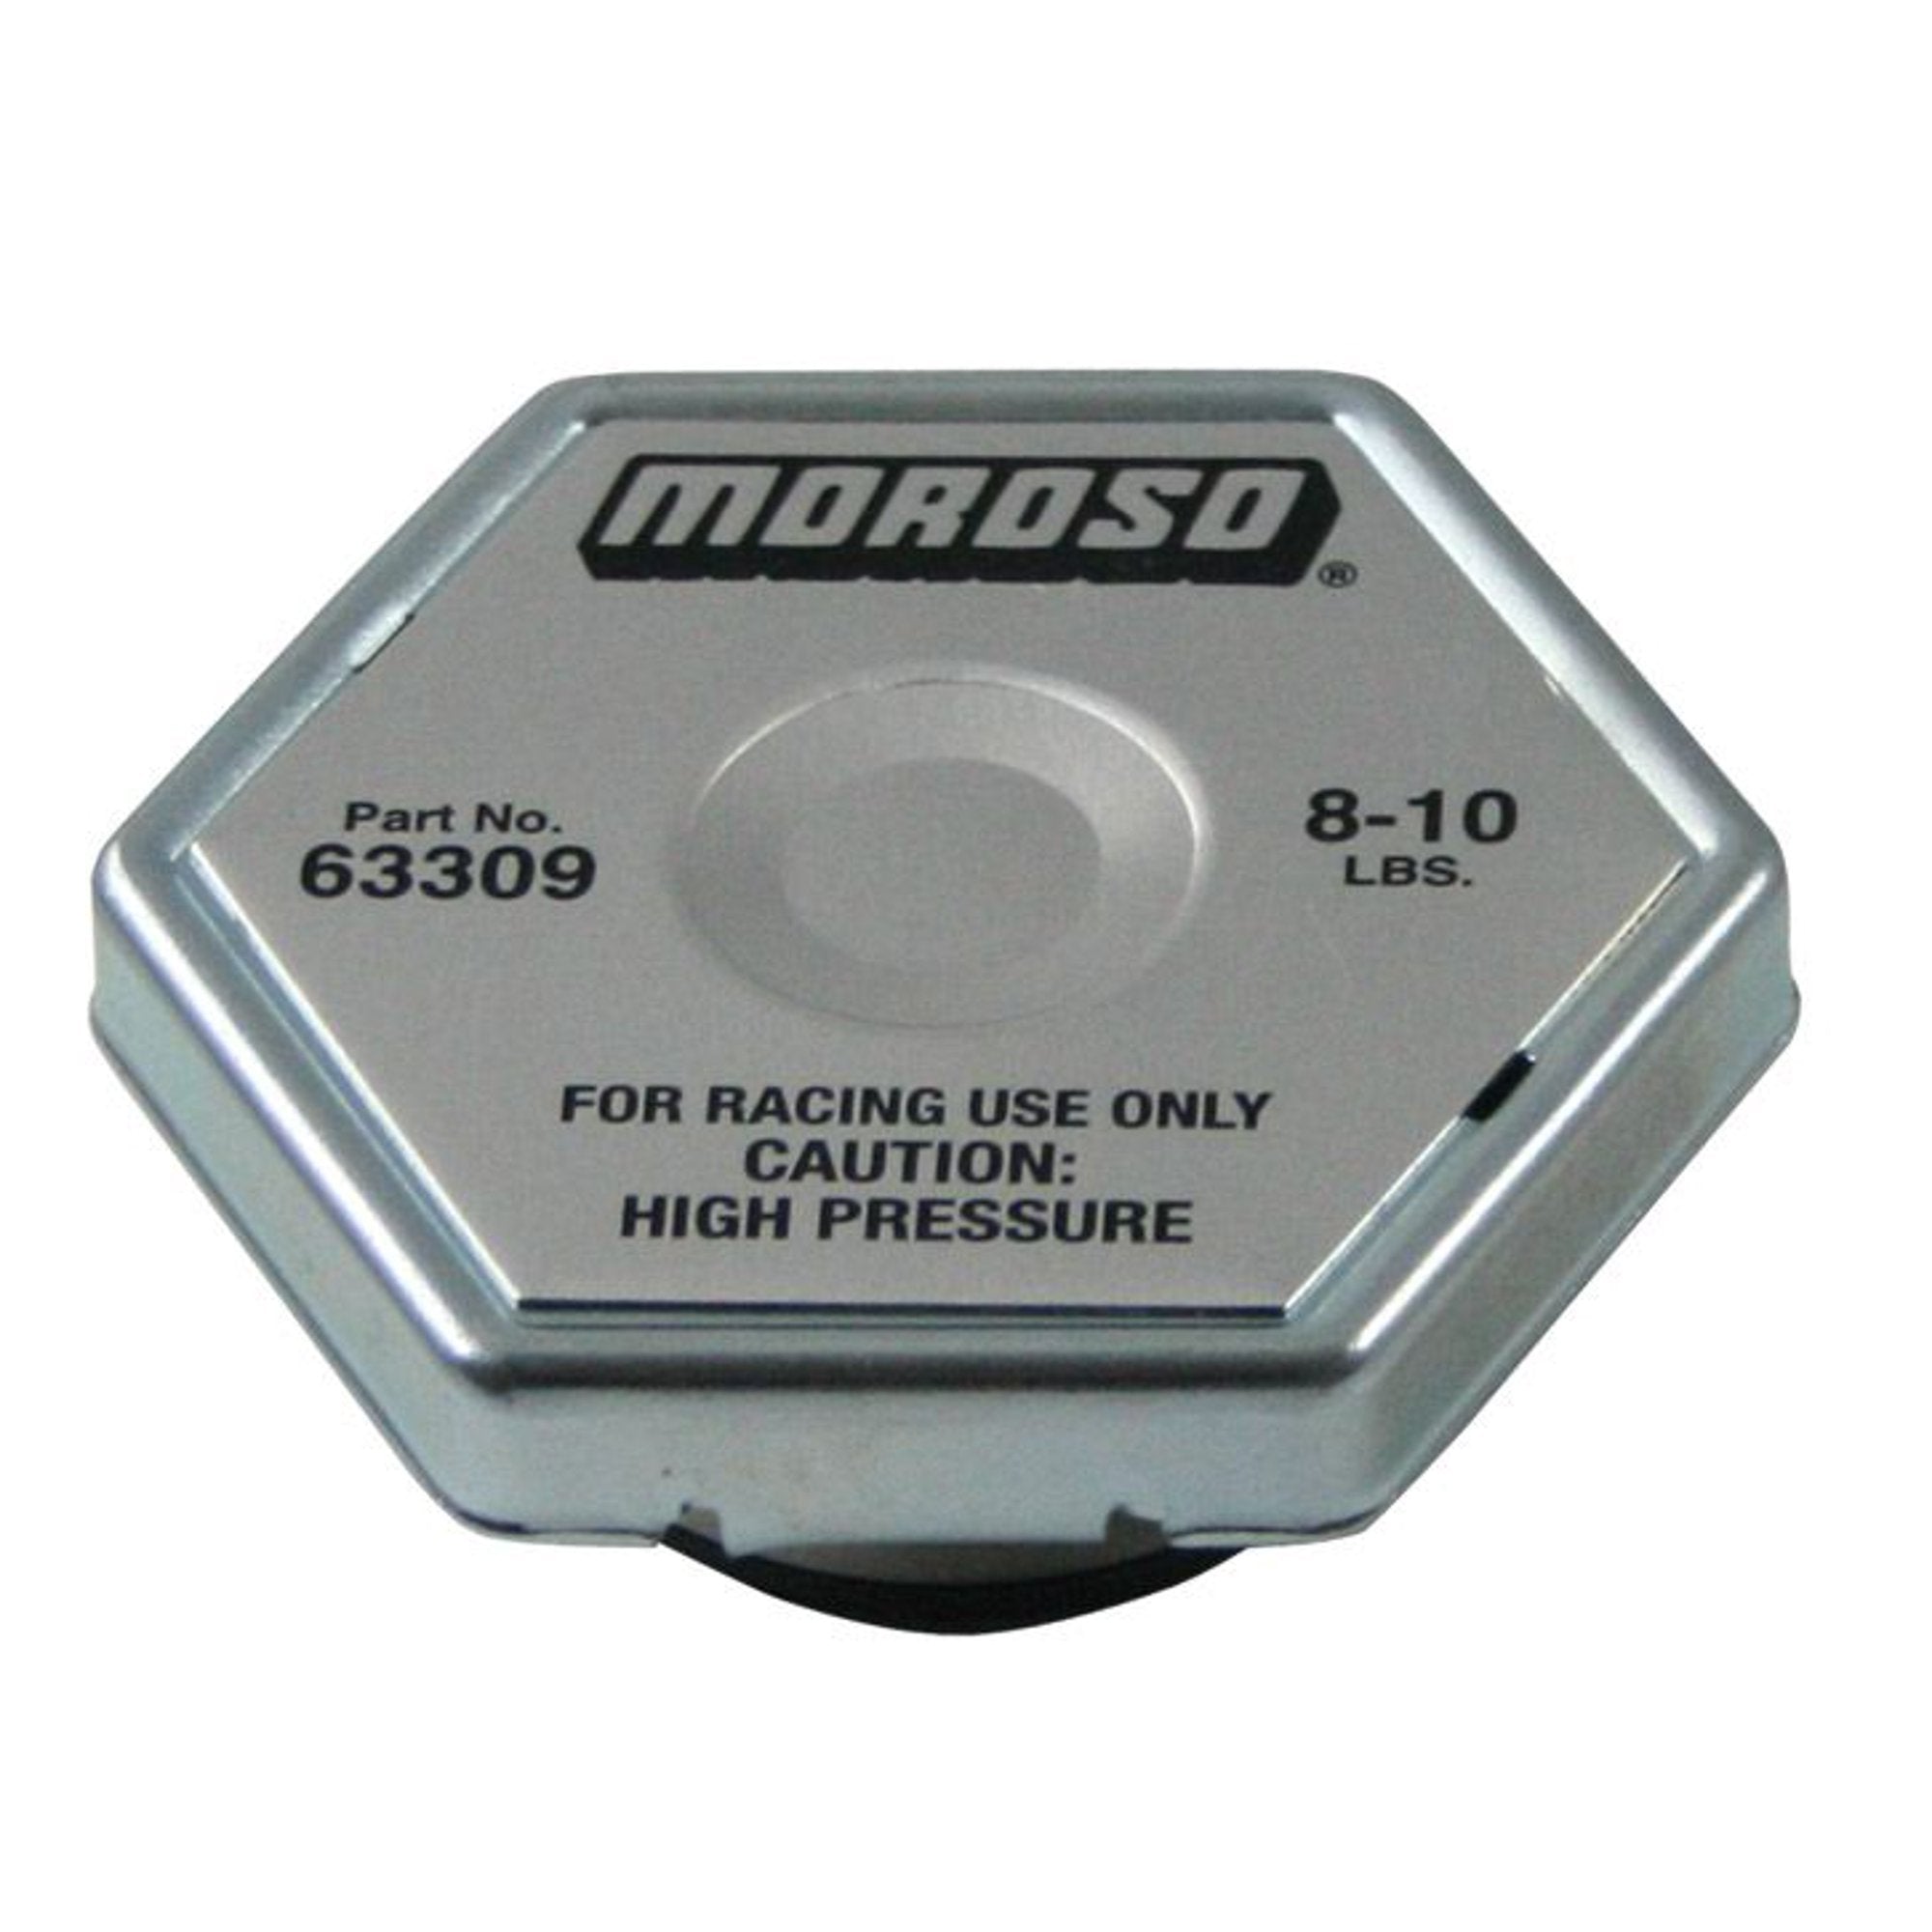 Moroso 63309 Racing Radiator Cap (9 lb)